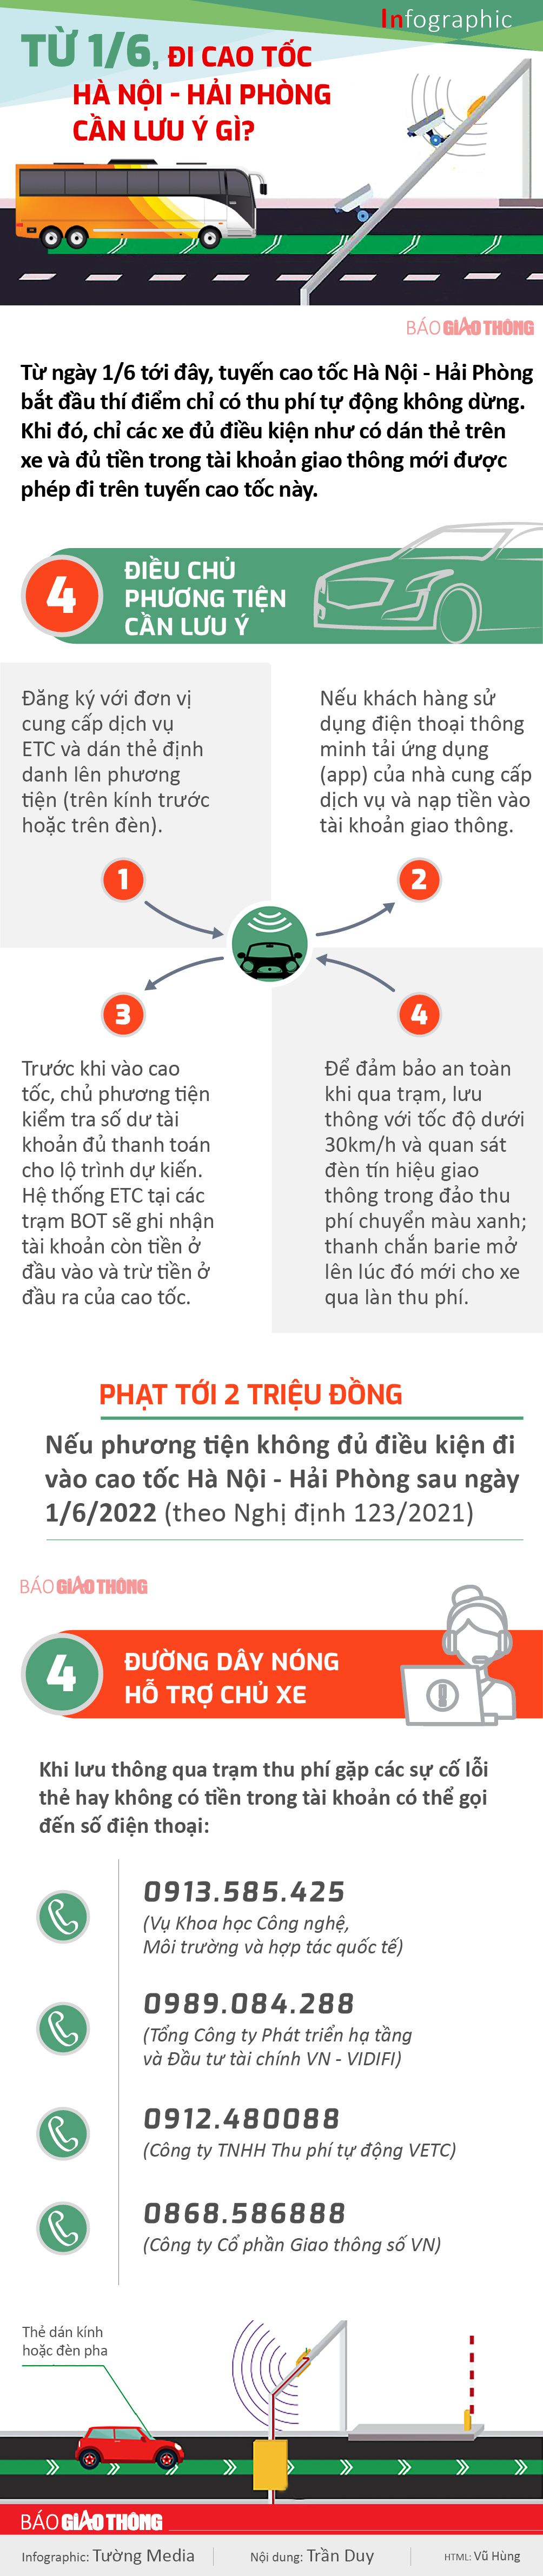 Infographic: Lưu ý khi đi trên cao tốc Hà Nội - Hải Phòng từ 1/6 - 1